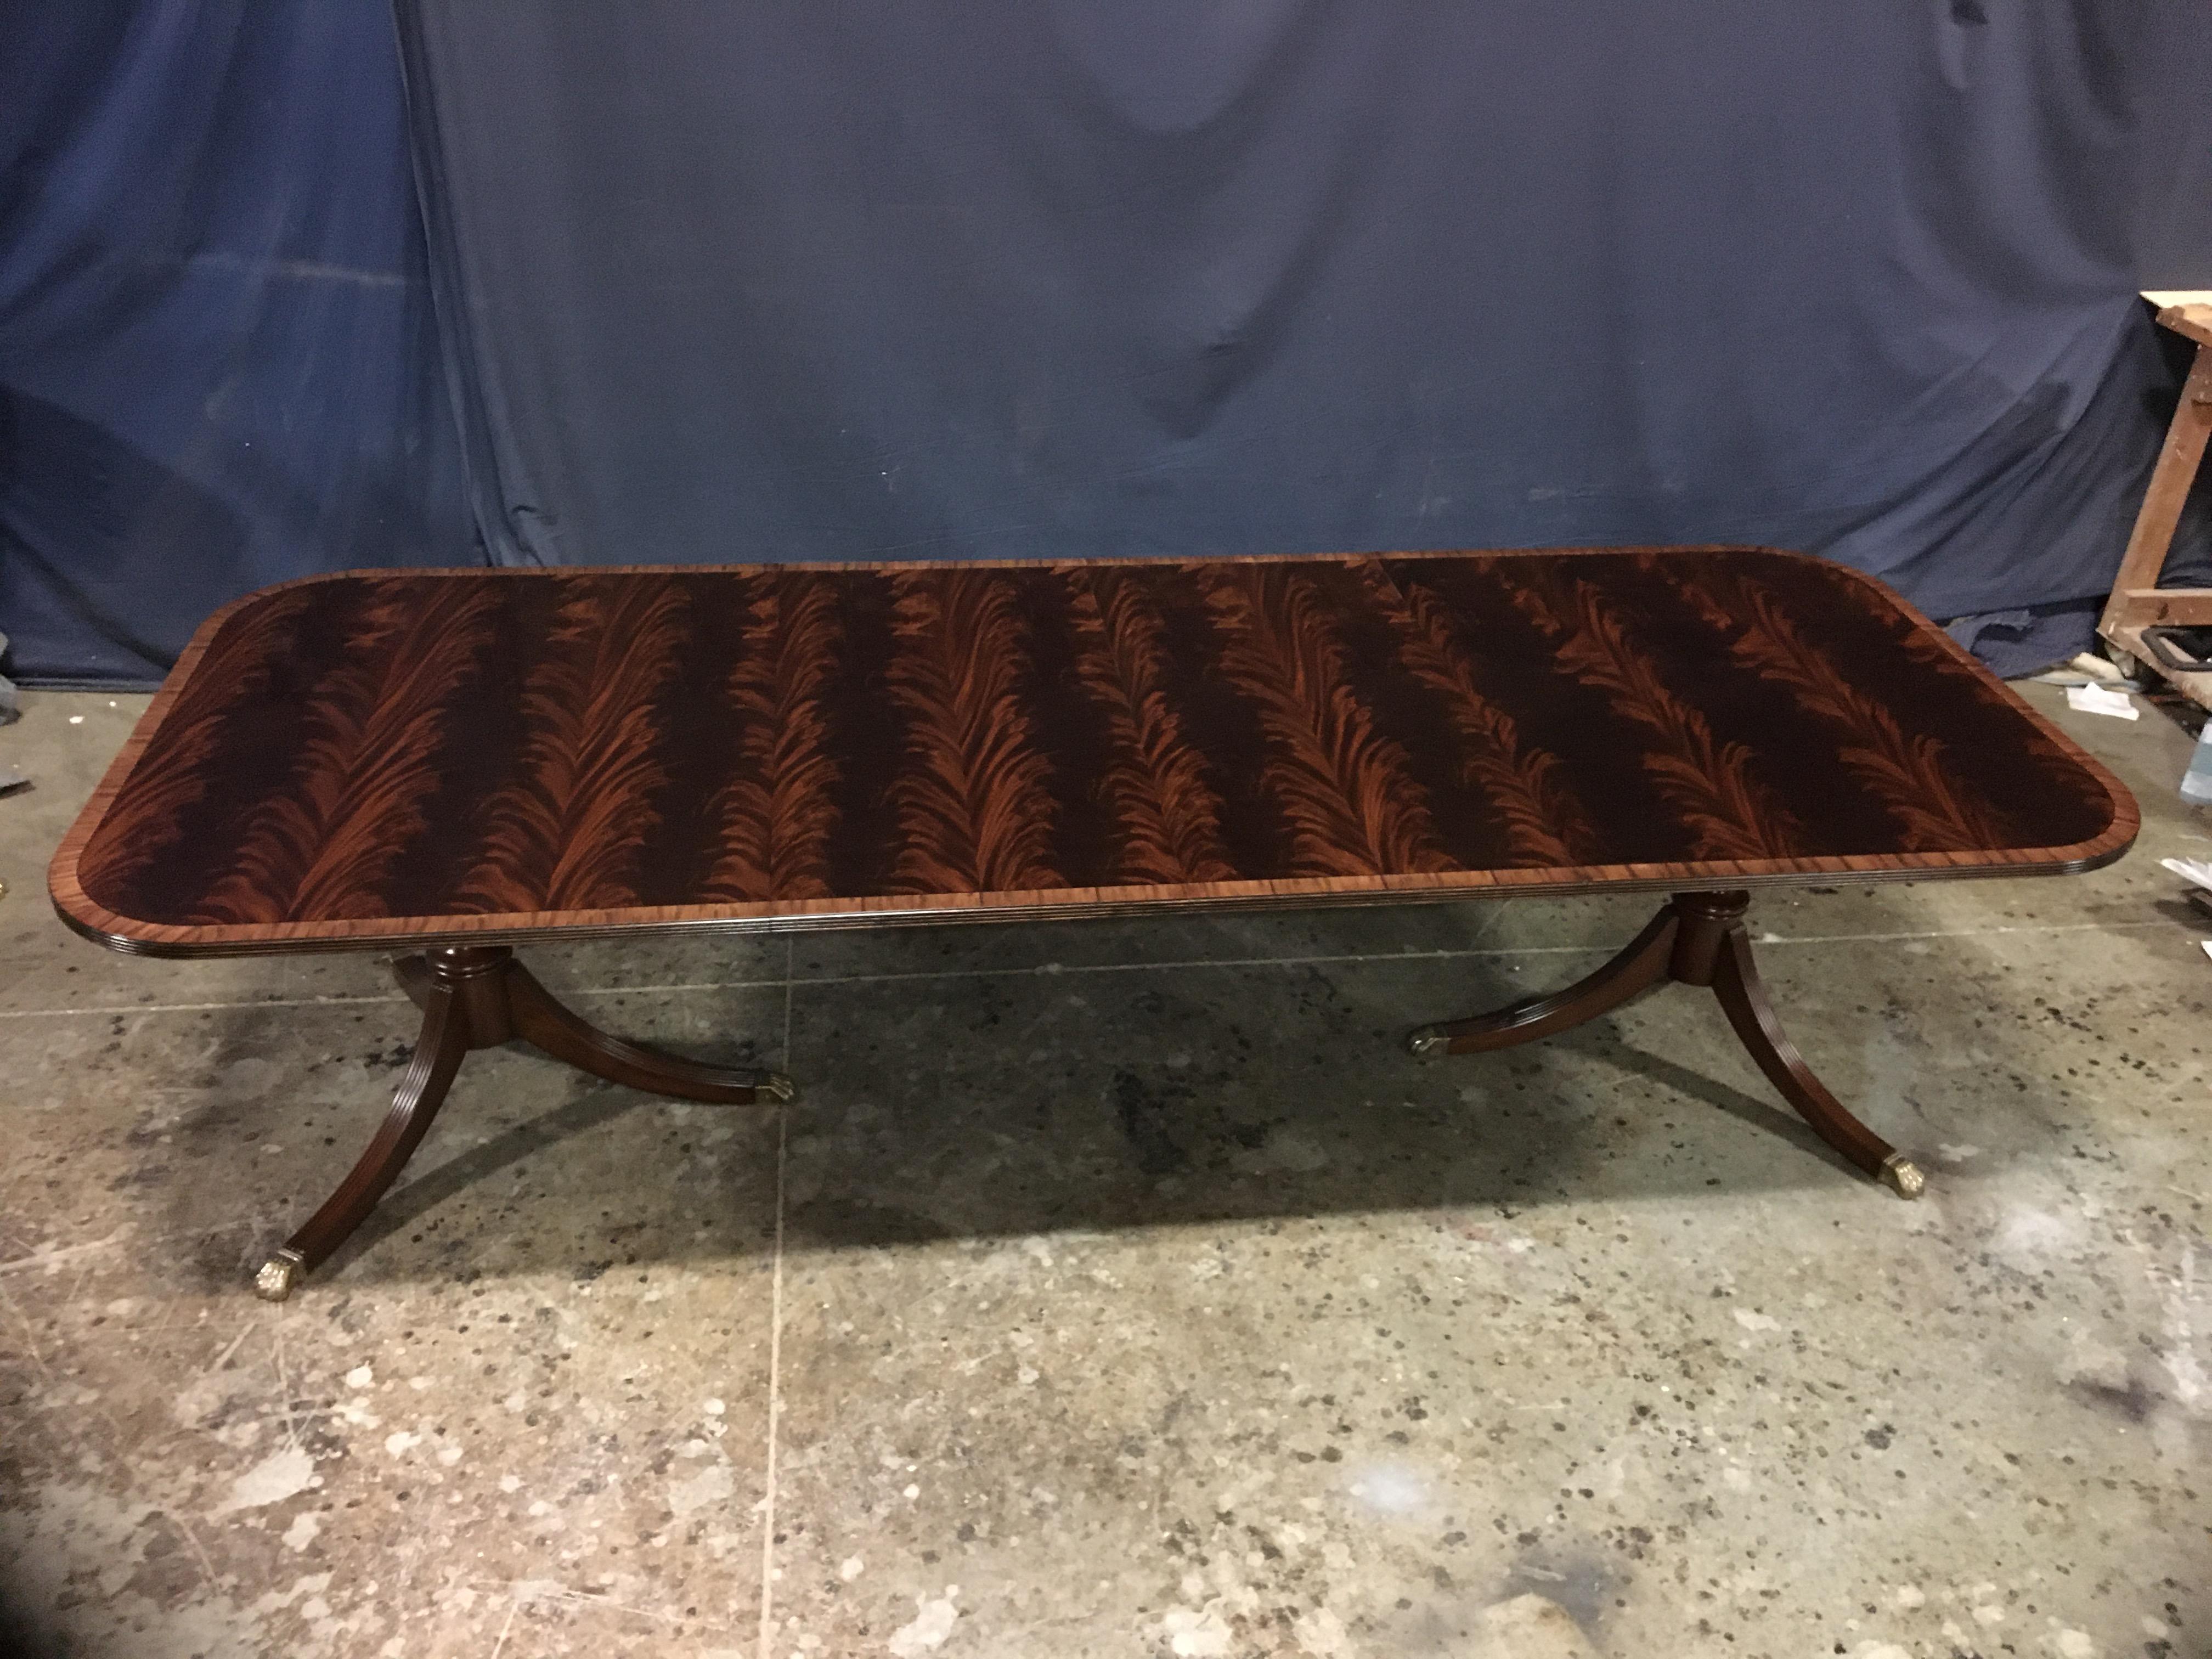 Il s'agit d'une table de salle à manger traditionnelle en acajou fabriquée sur commande dans l'atelier de Leighton Hall. Il se compose d'un champ d'acajou crotch swirched slip-matched provenant d'Afrique de l'Ouest. Il présente une bordure en bois